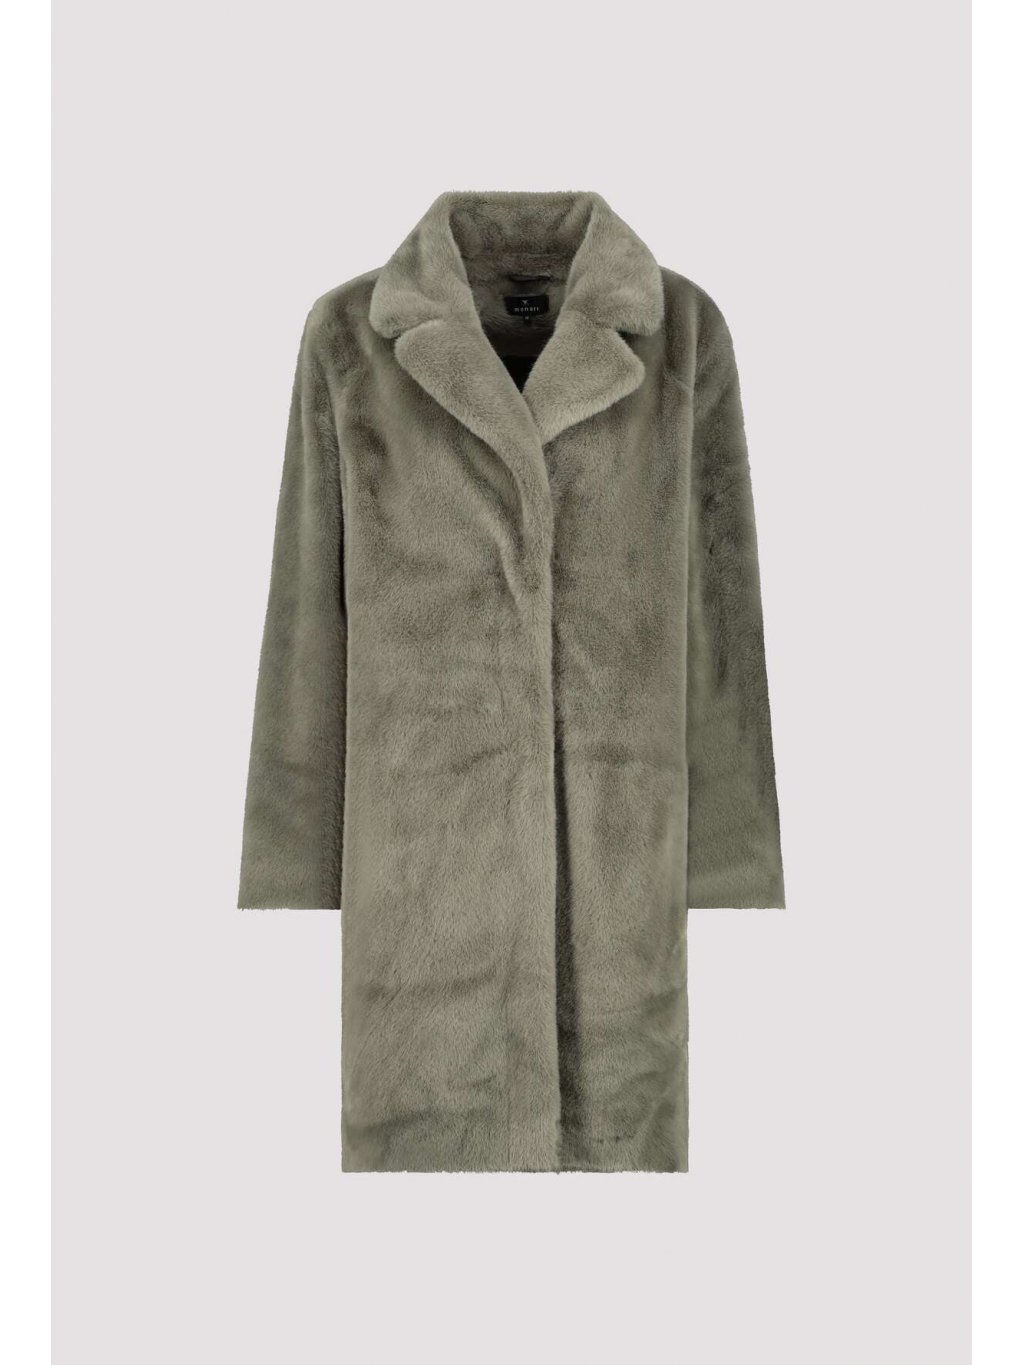 Kabát Monari 7336 zelený kožíškový 